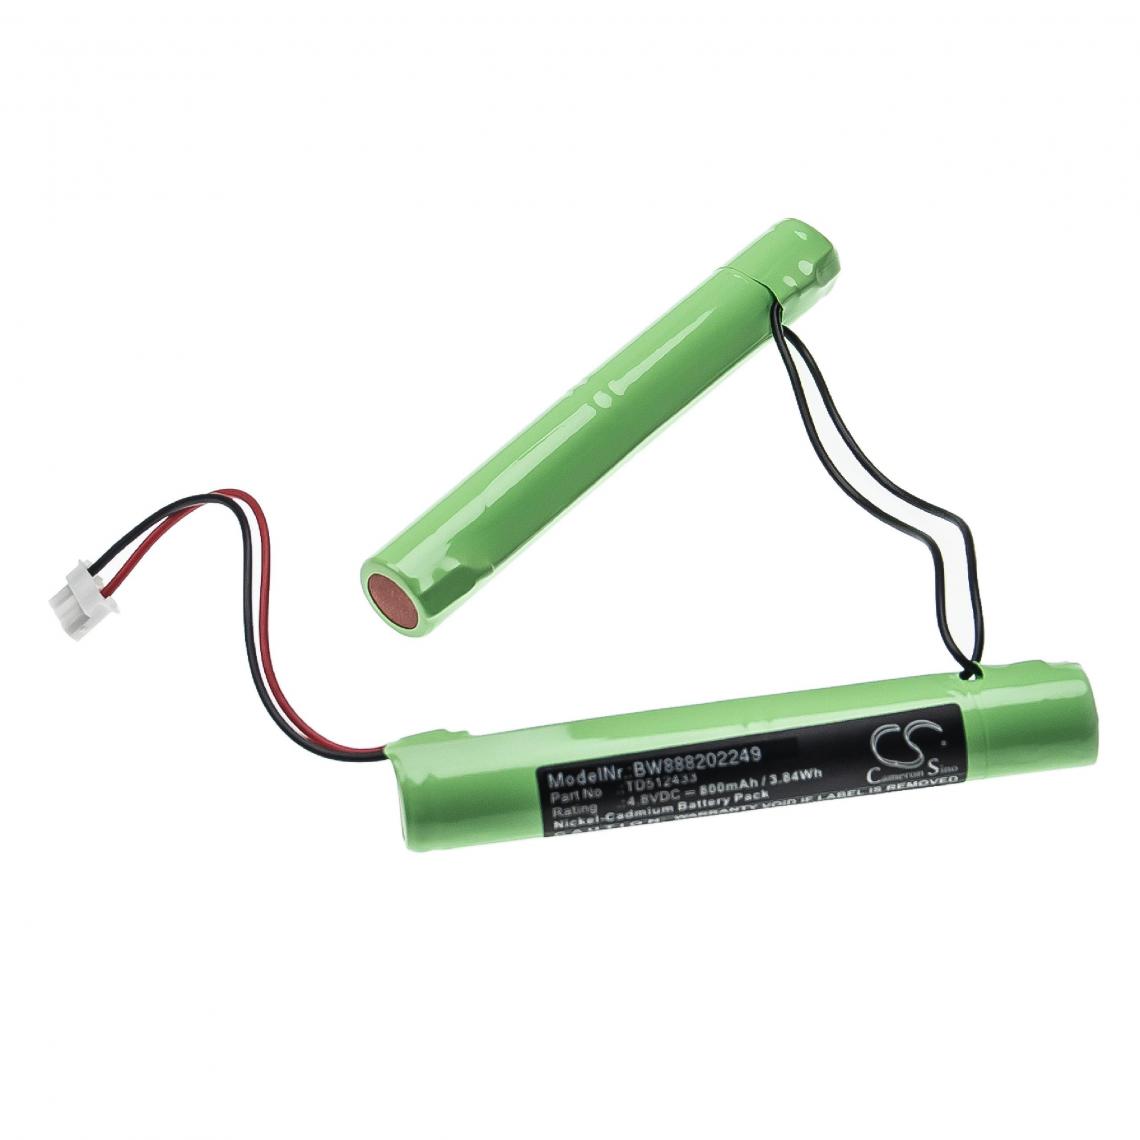 Vhbw - vhbw Batterie remplacement pour BAES TD512433 pour éclairage d'issue de secours (800mAh, 4,8V, NiCd) - Autre appareil de mesure